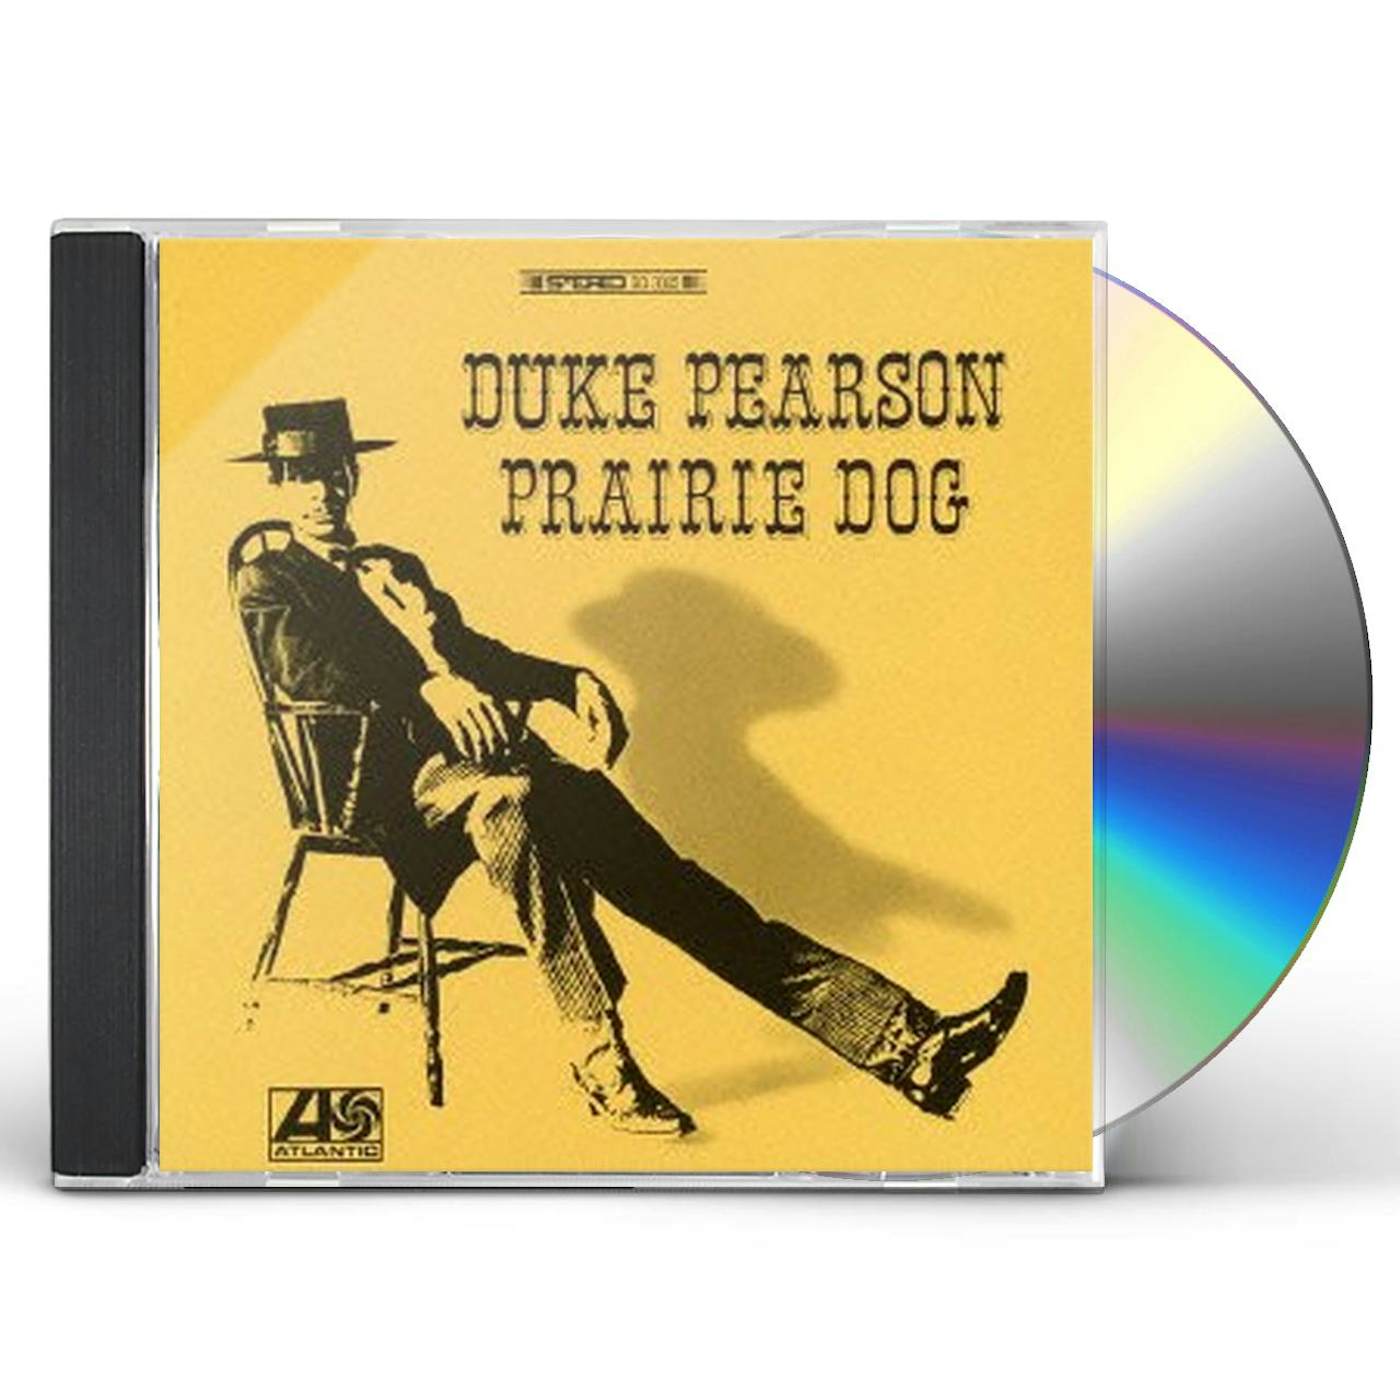 Duke Pearson PRAIRIE DOG CD